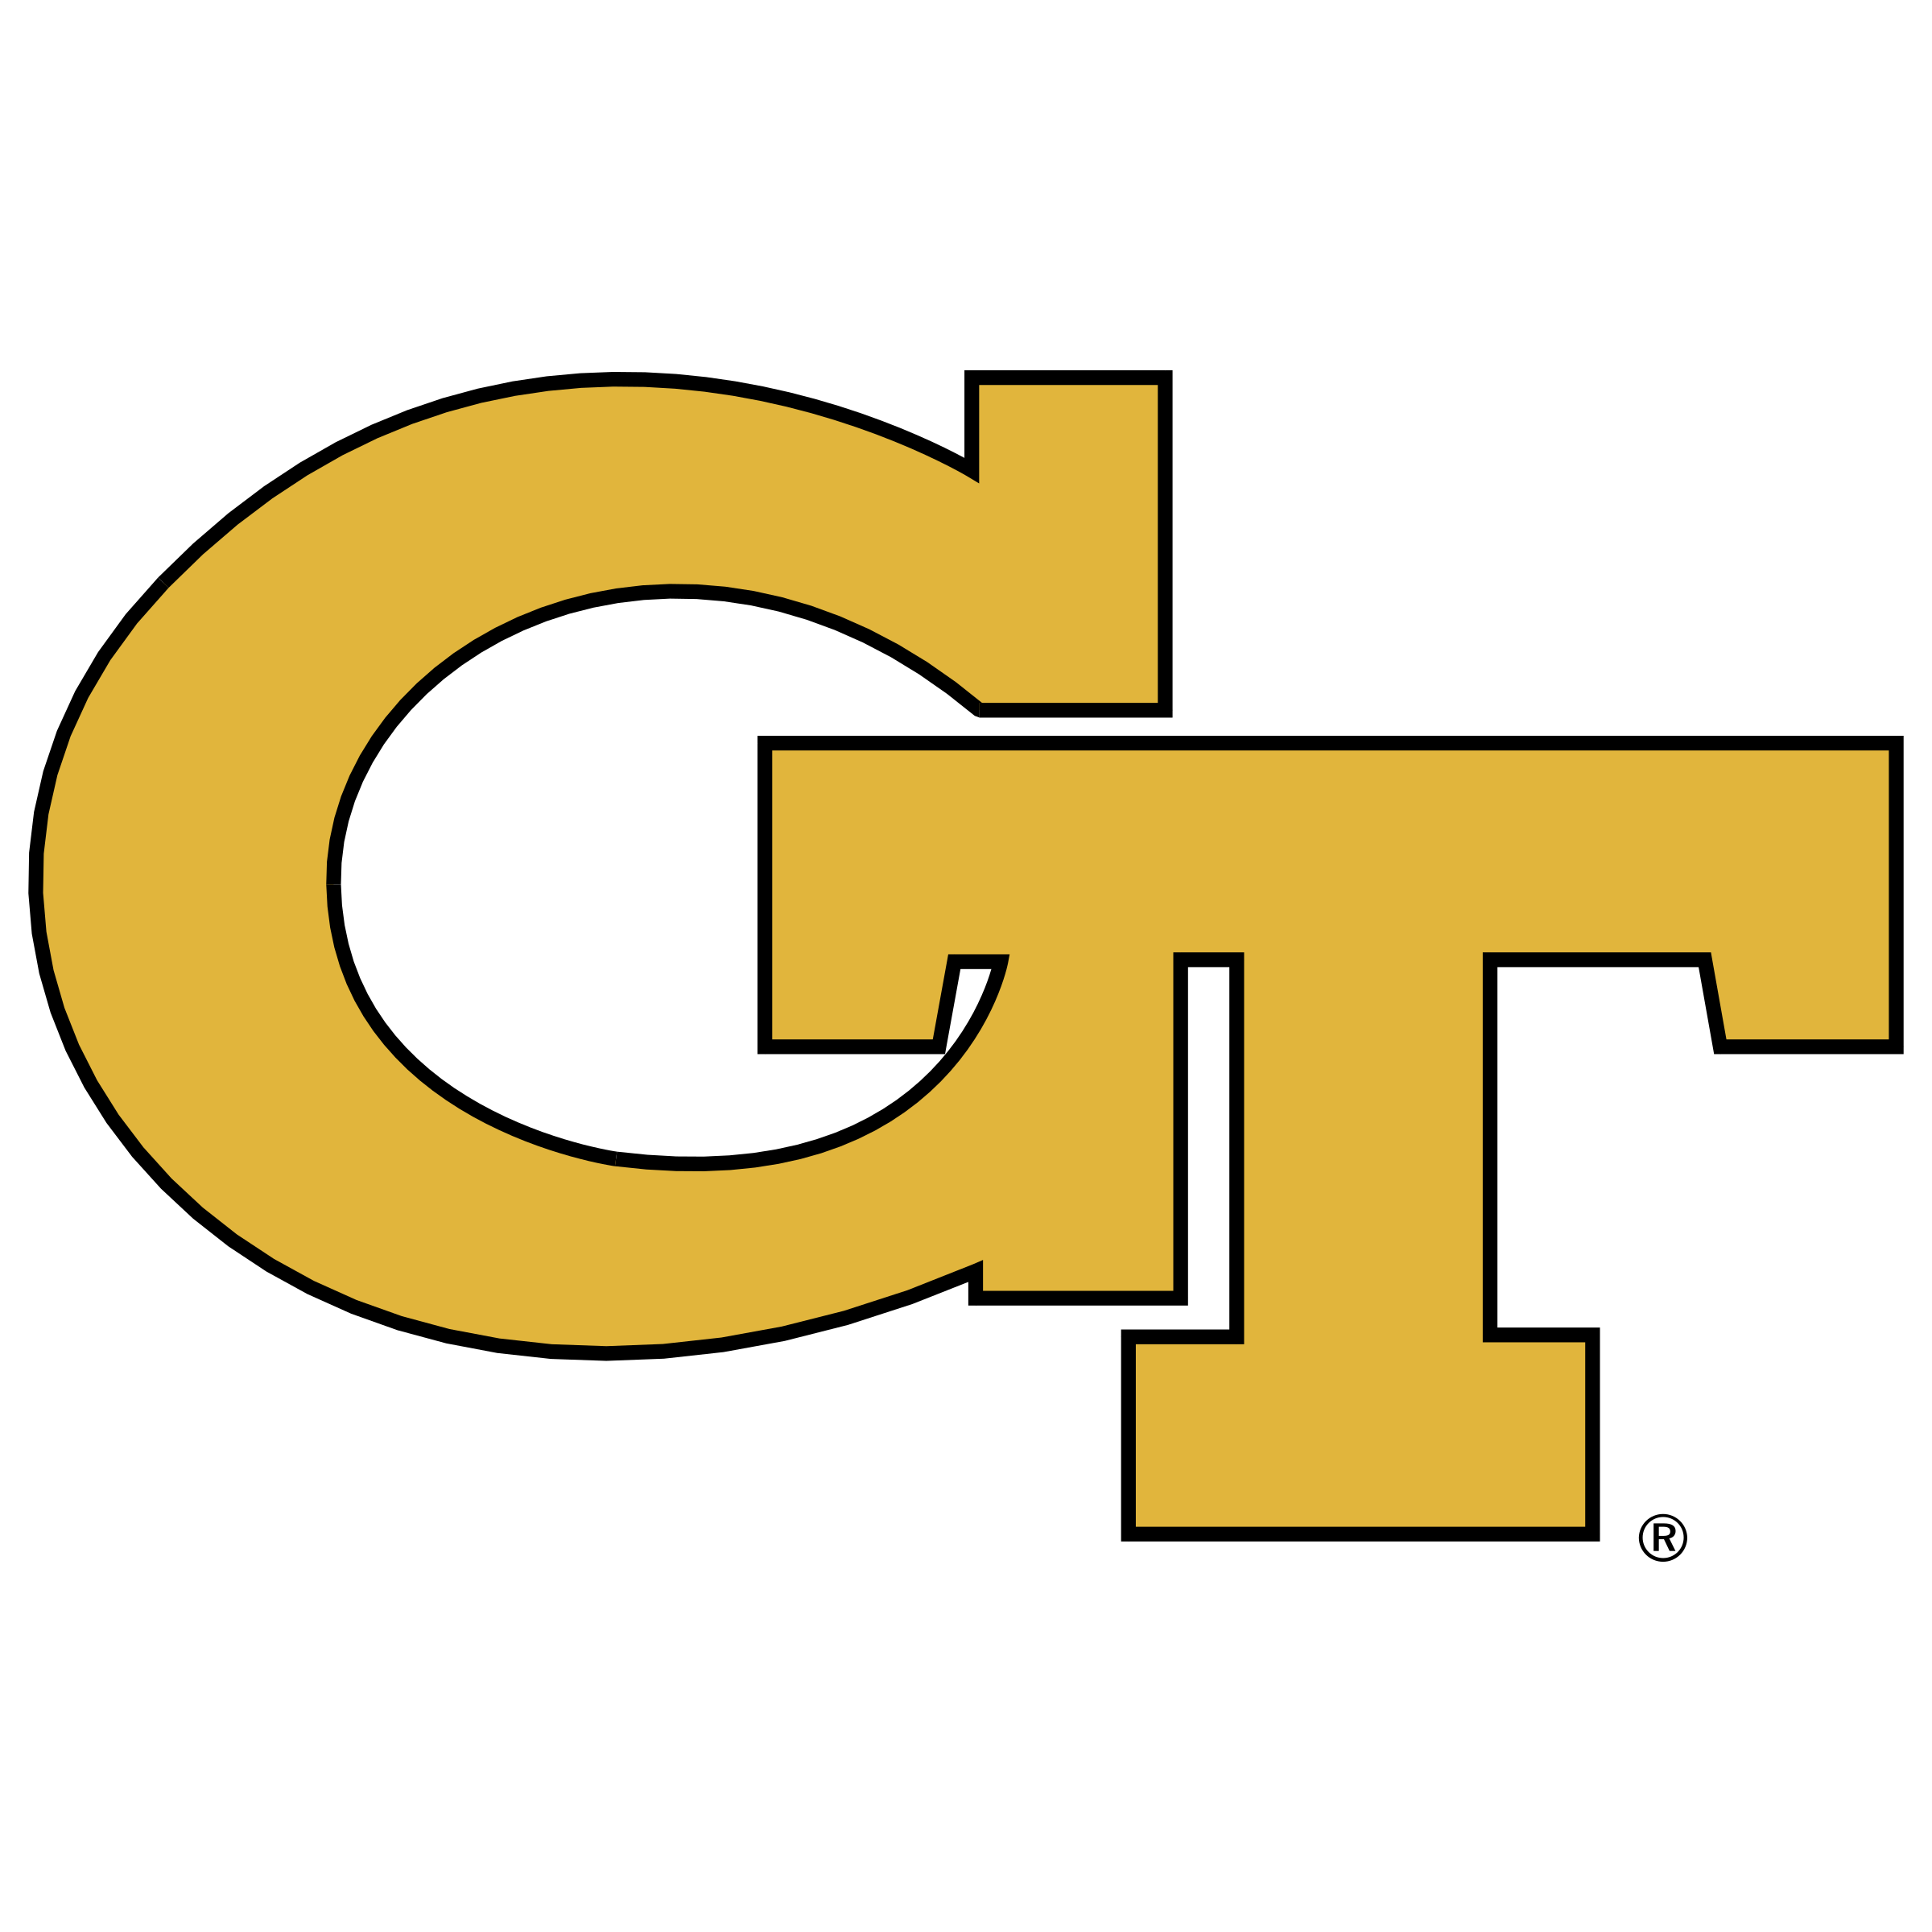 Georgia Tech Logo No Background